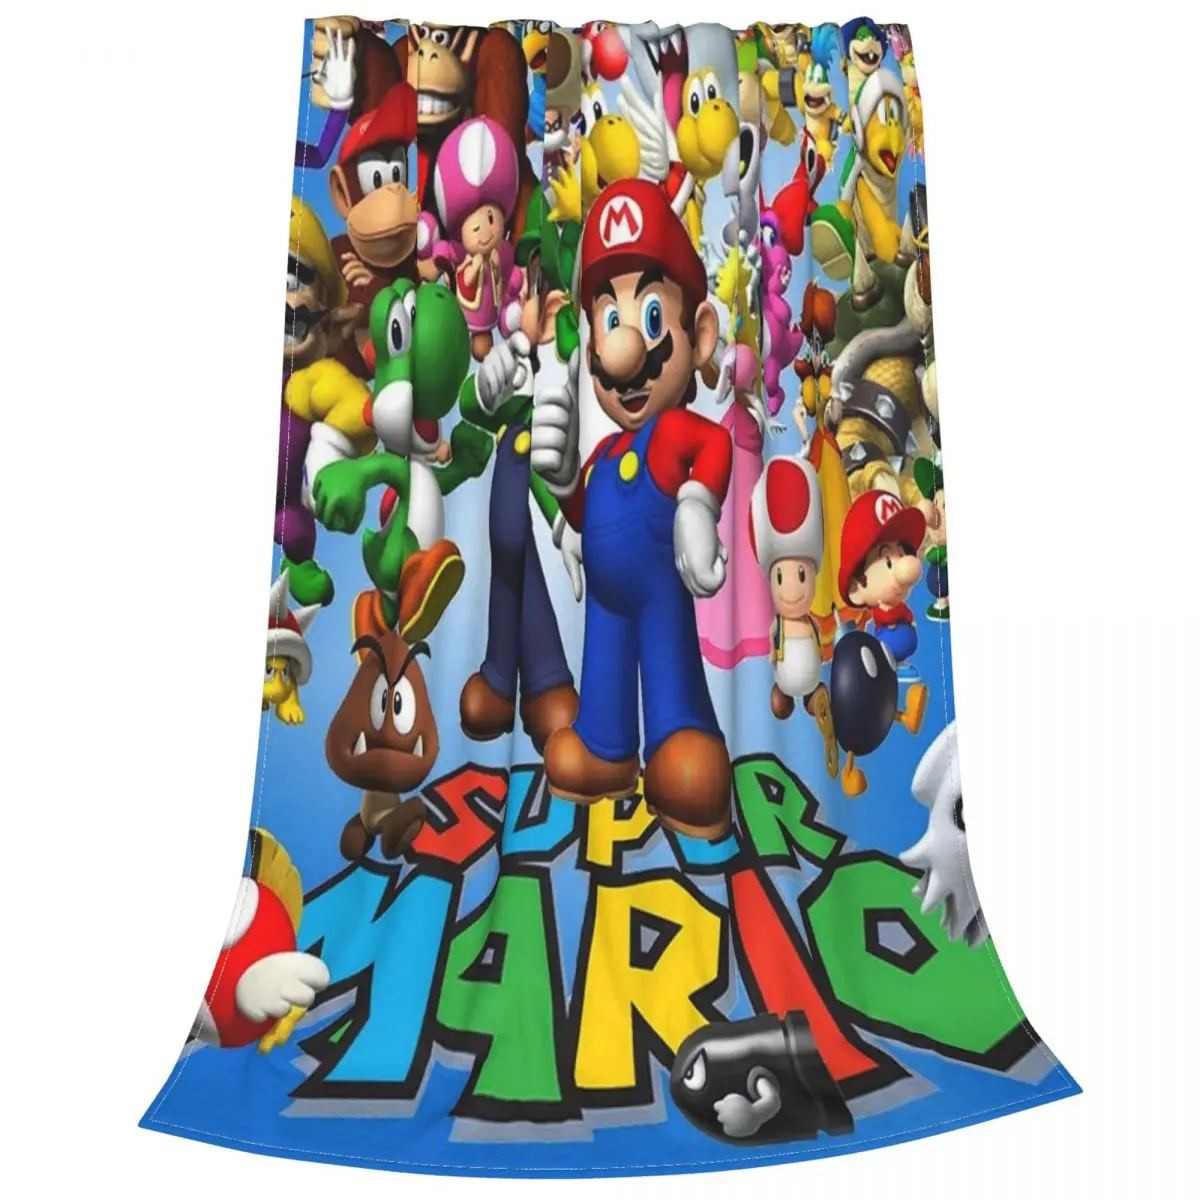 

Флисовое одеяло Super Mario, многофункциональное супермягкое покрывало для кровати, кушетки, зима